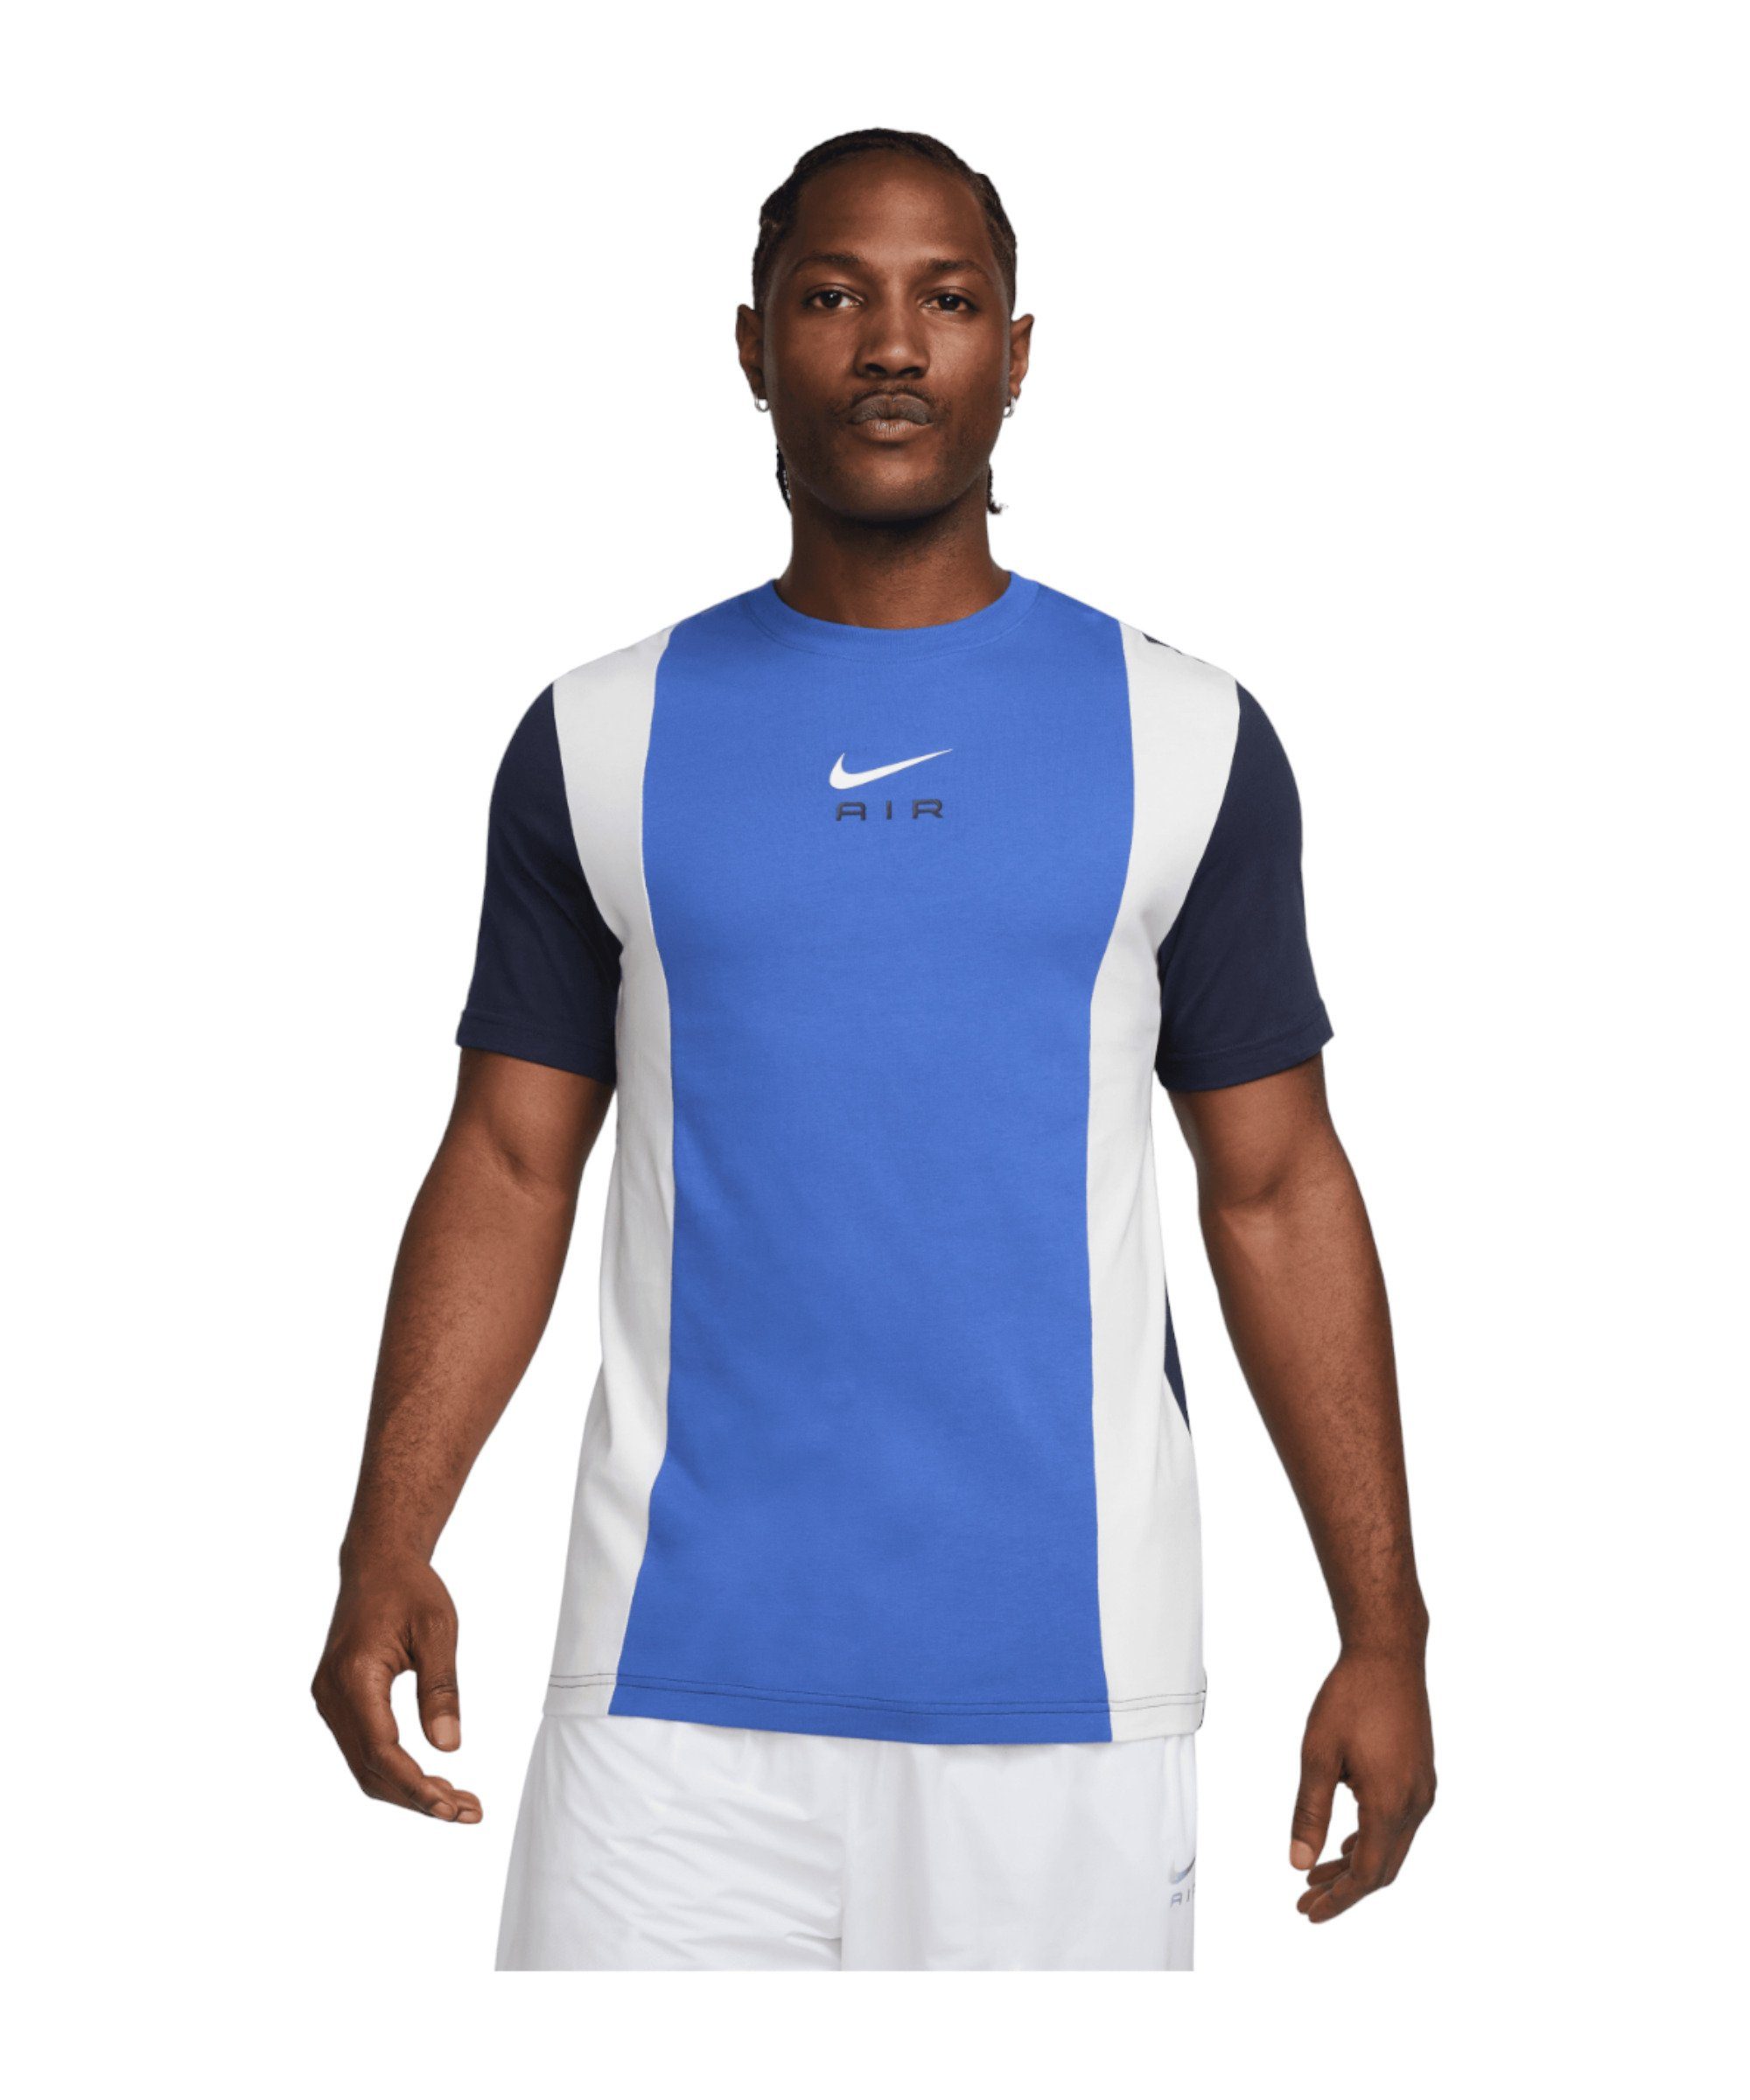 T-Shirt blauweiss default Air Sportswear Nike T-Shirt